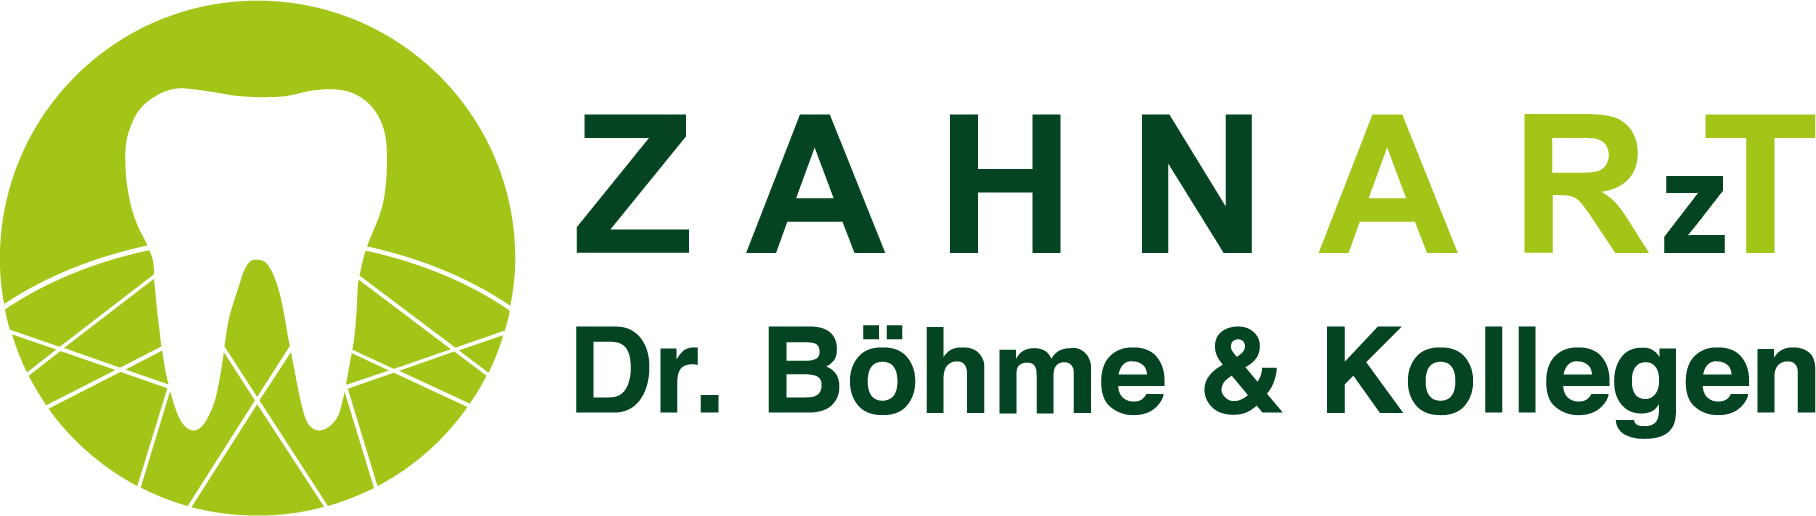 Logo-Zahnarztpraxis-liniert.png